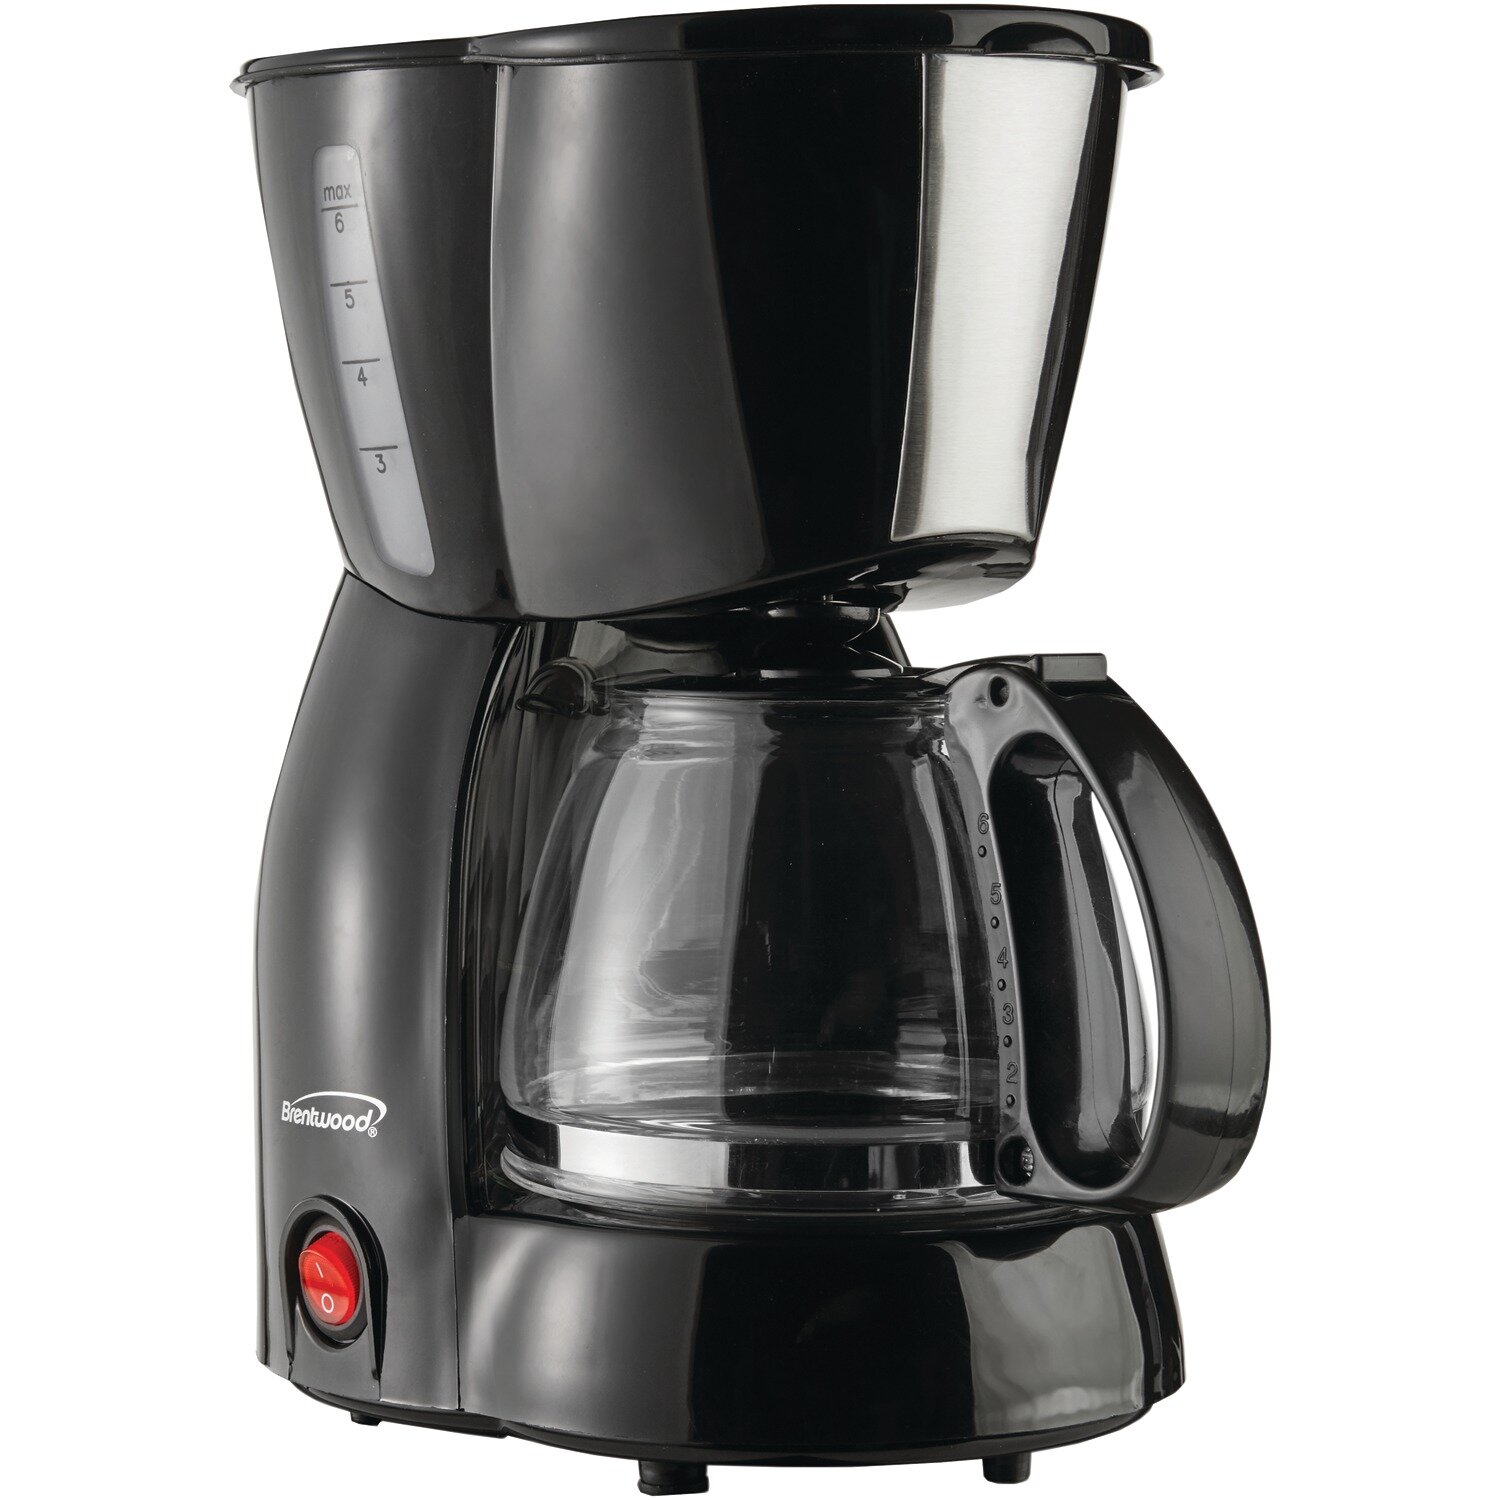 https://assets.wfcdn.com/im/73771283/compr-r85/9715/97155419/brentwood-appliances-4-cup-coffee-maker.jpg